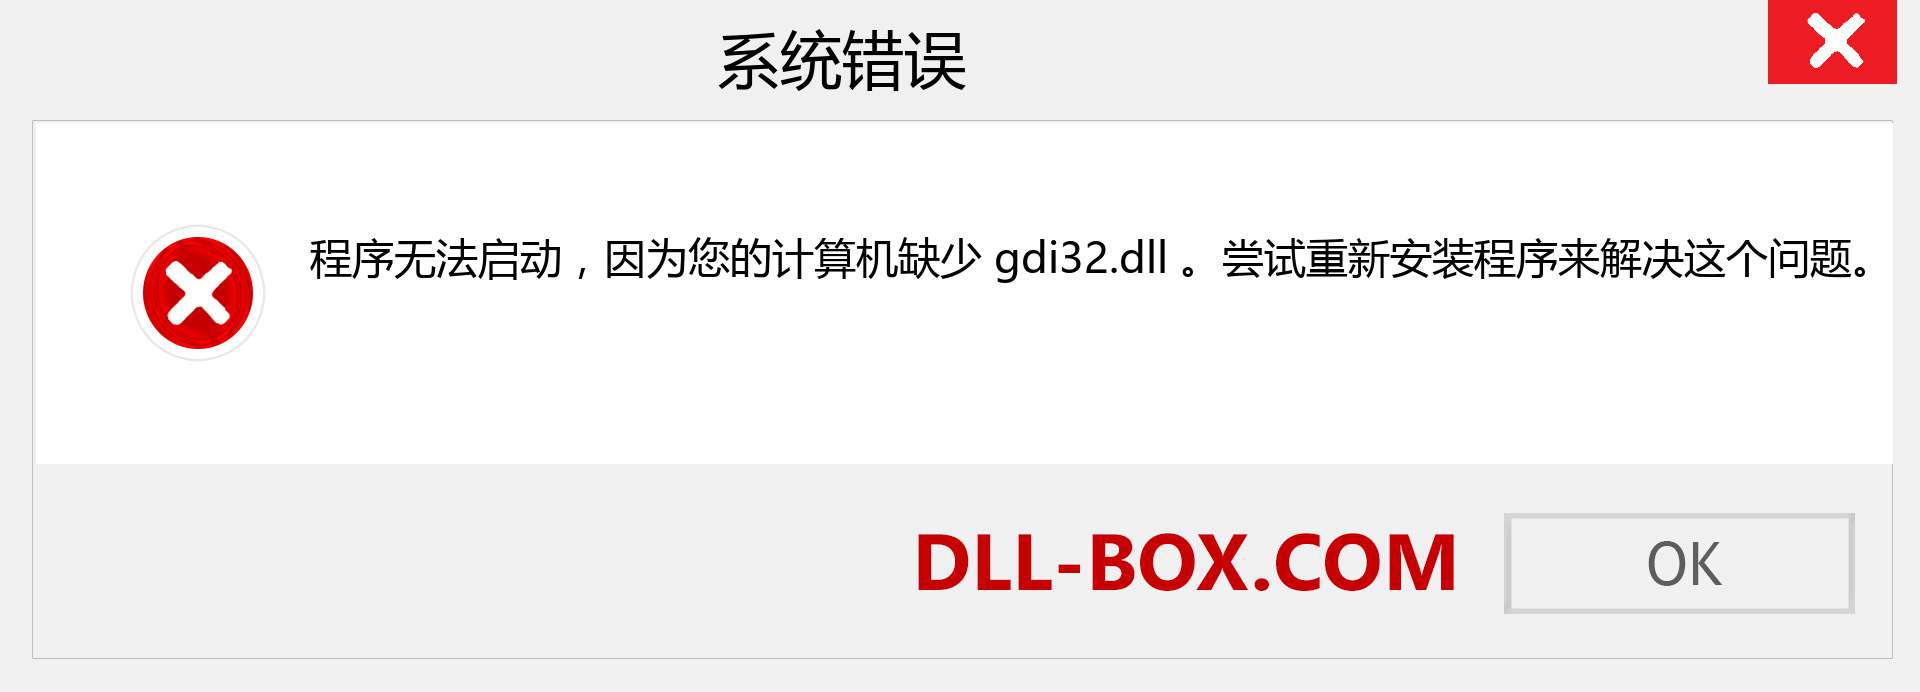 gdi32.dll 文件丢失？。 适用于 Windows 7、8、10 的下载 - 修复 Windows、照片、图像上的 gdi32 dll 丢失错误